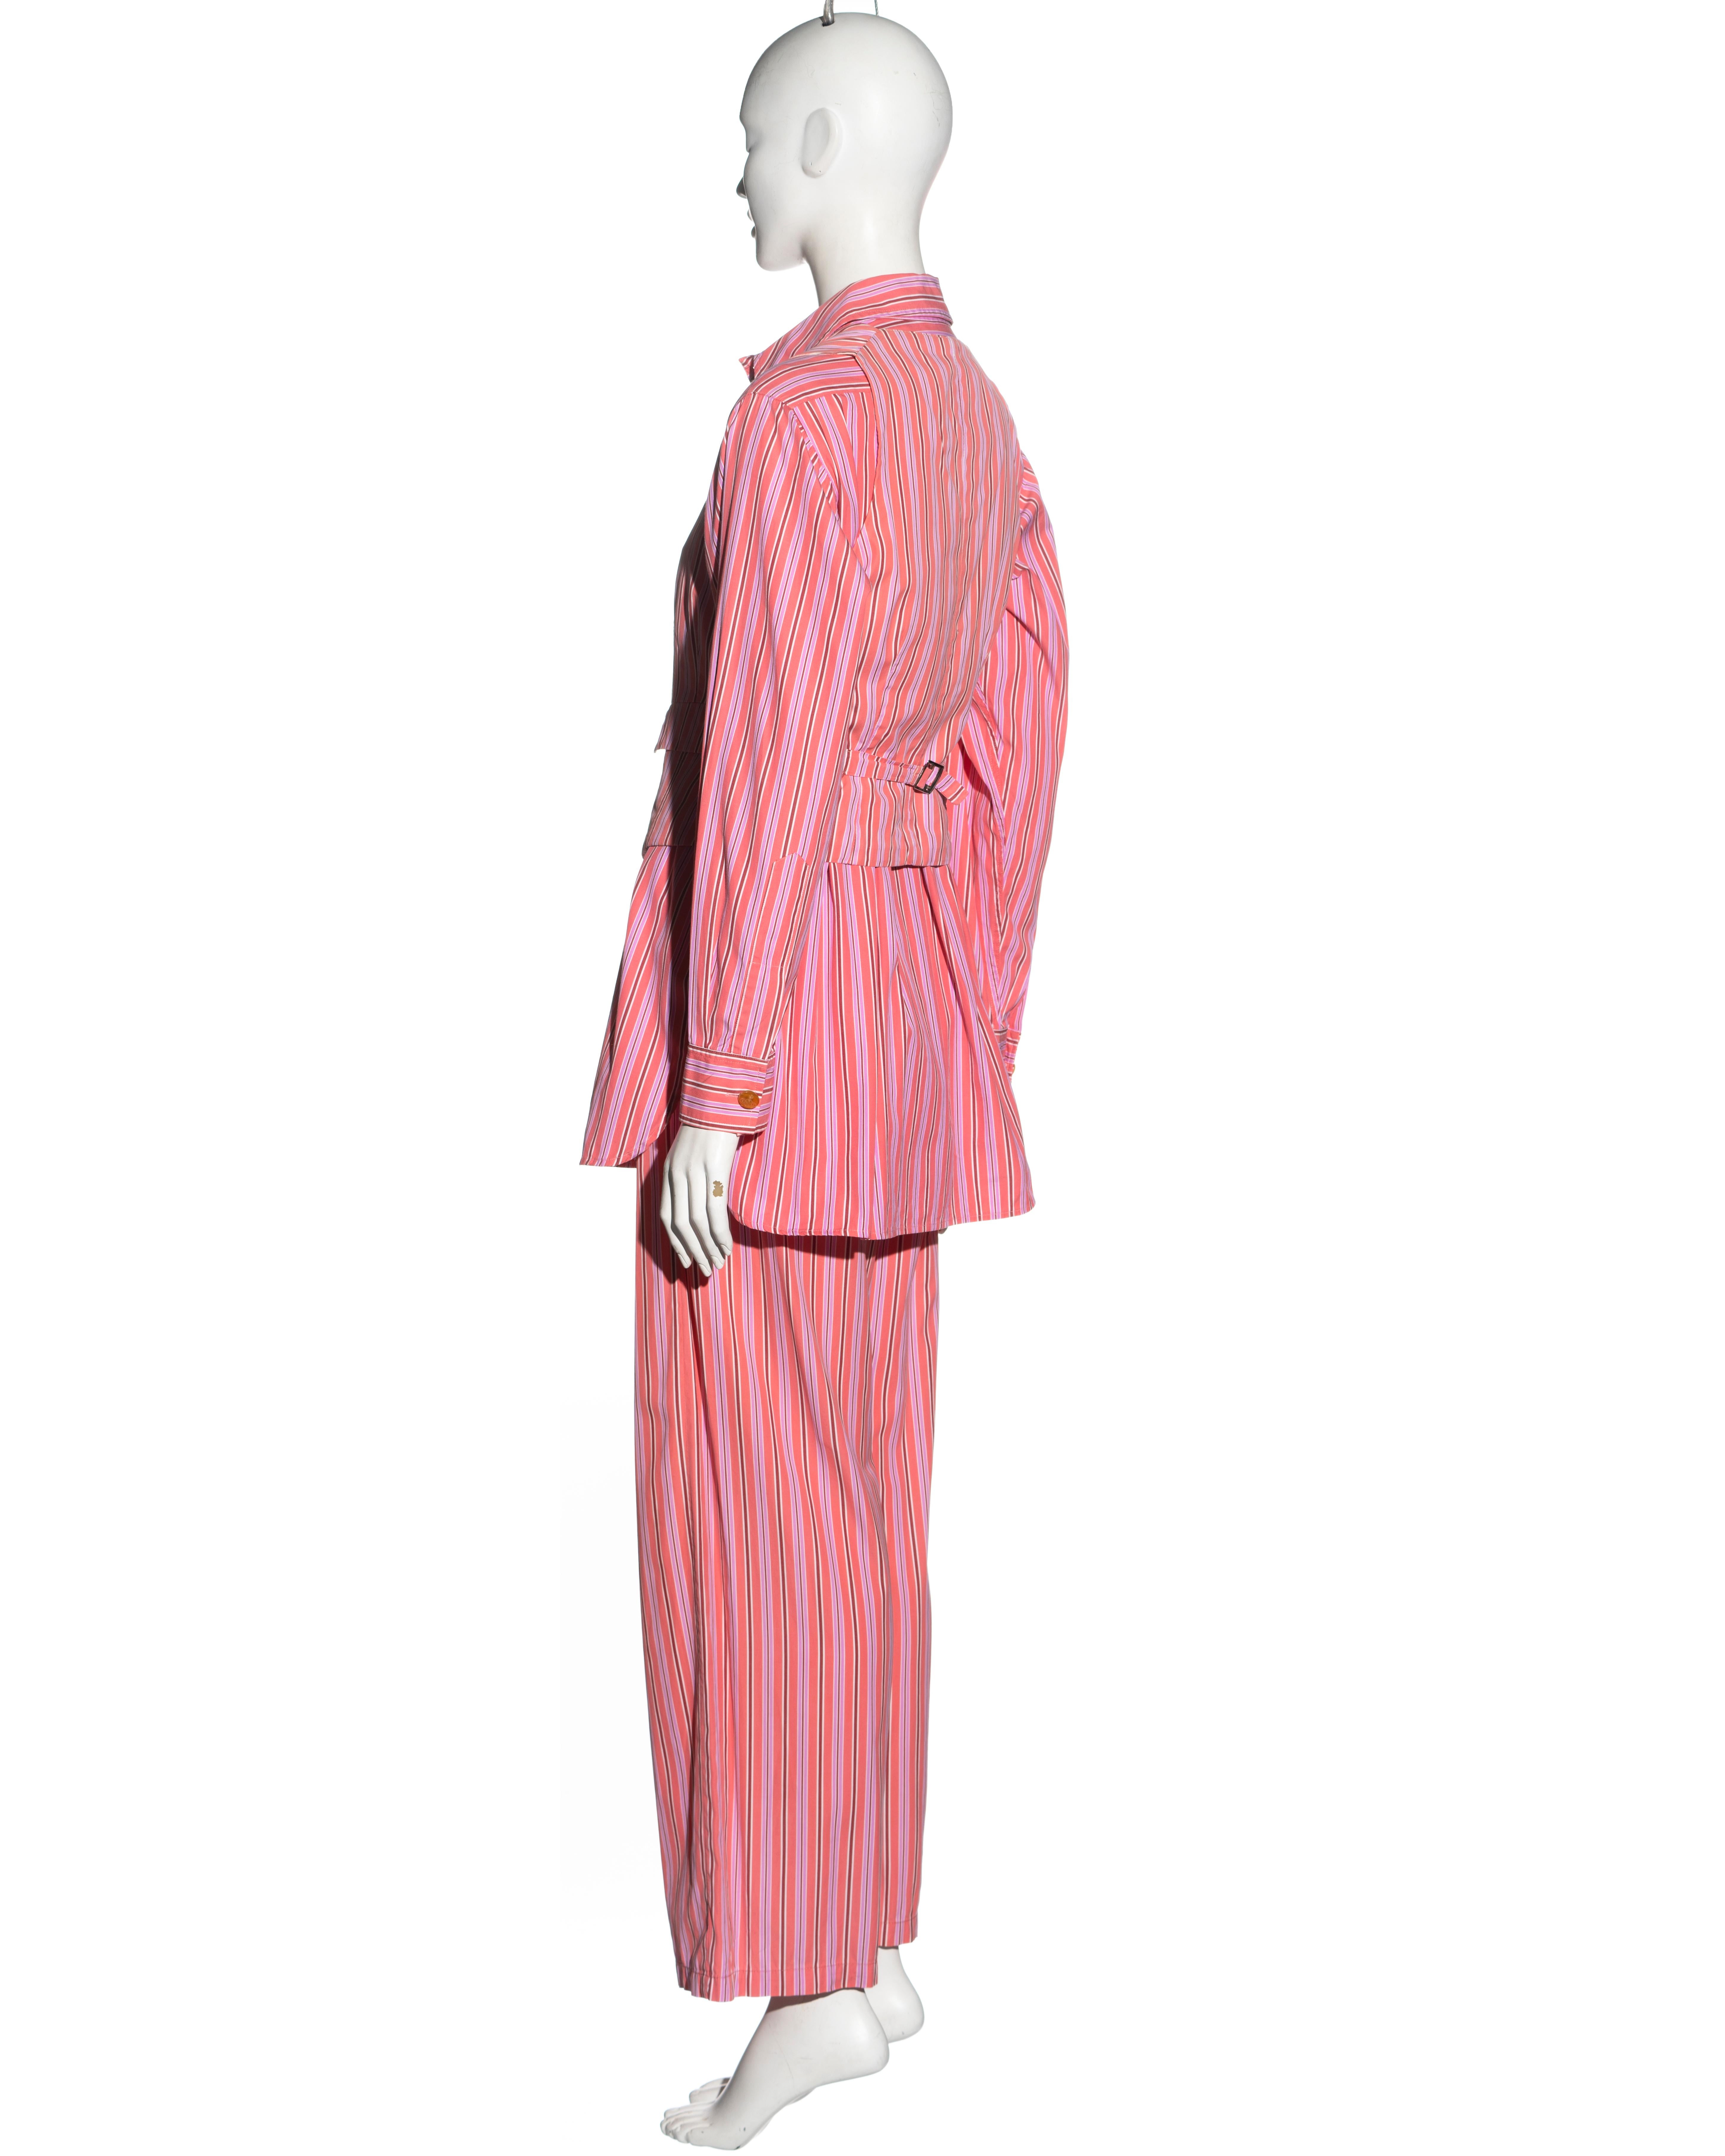 Vivienne Westwood pink striped cotton 3-piece suit, ss 1993 For Sale 8